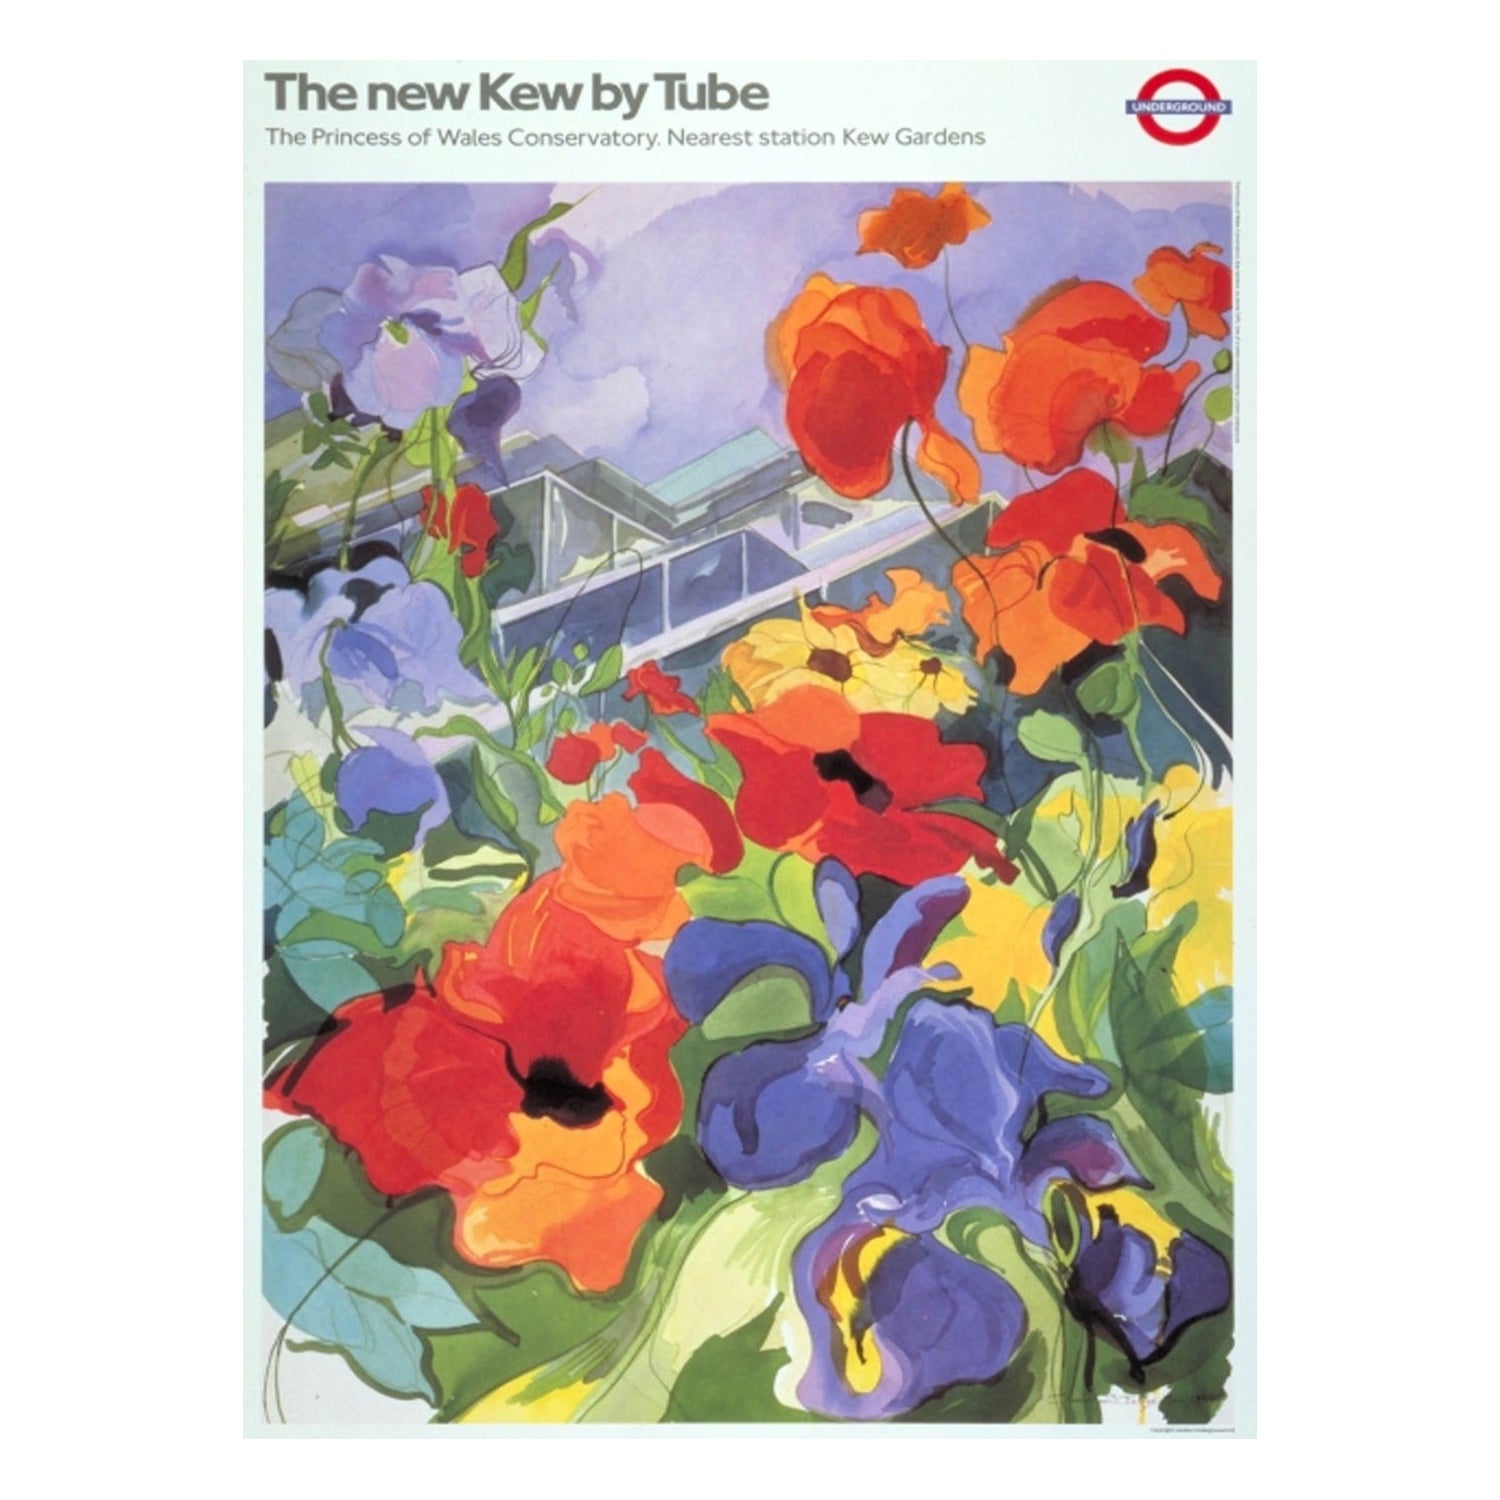 TFL - The New Kew by Tube - Affiche vintage originale de 1987